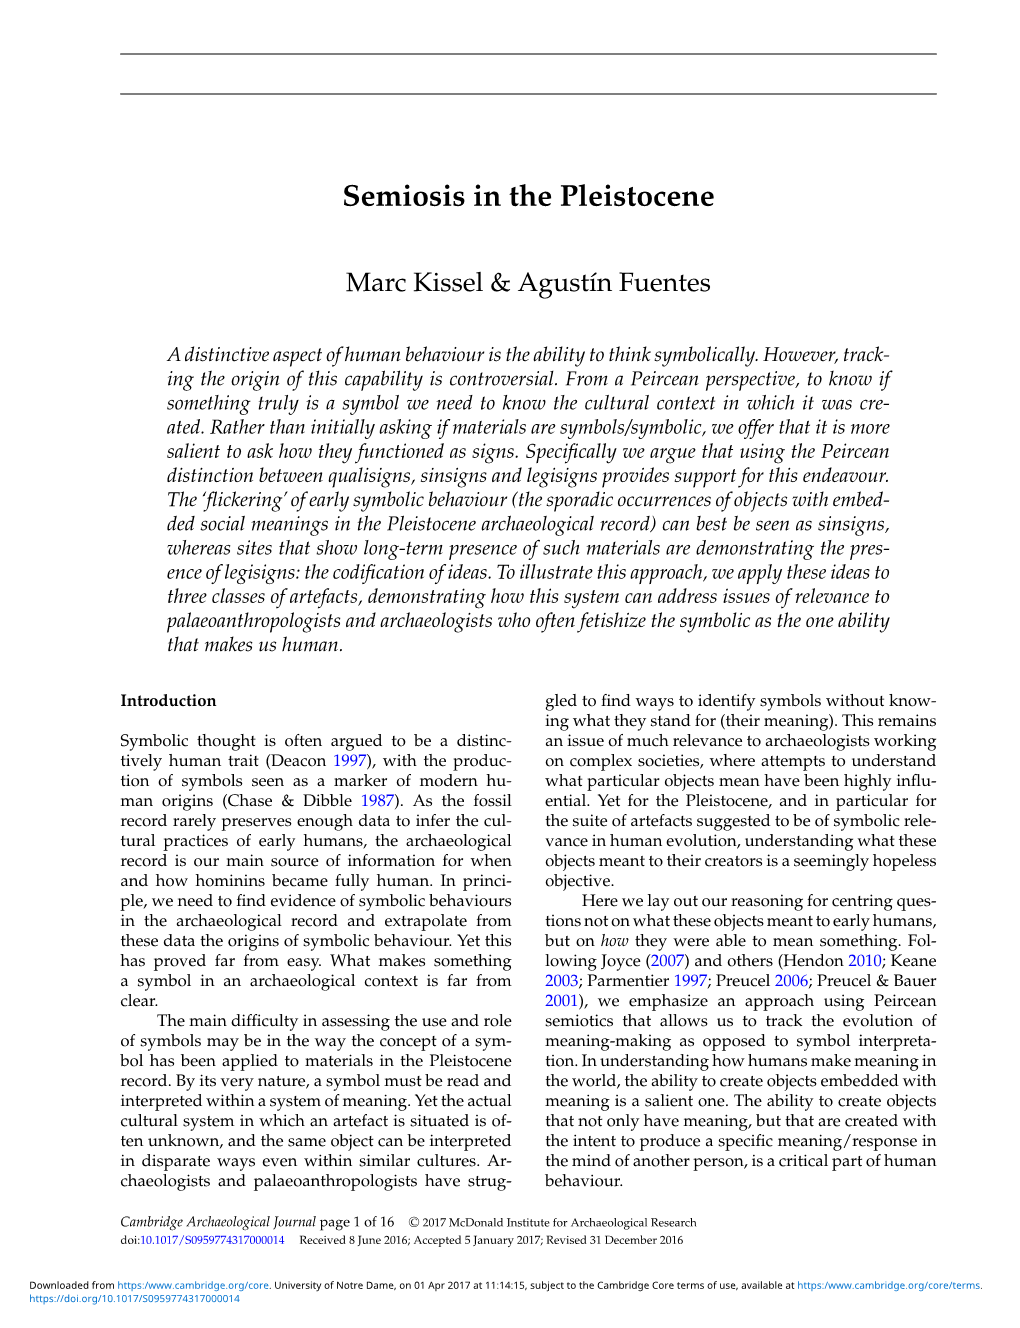 Semiosis in the Pleistocene